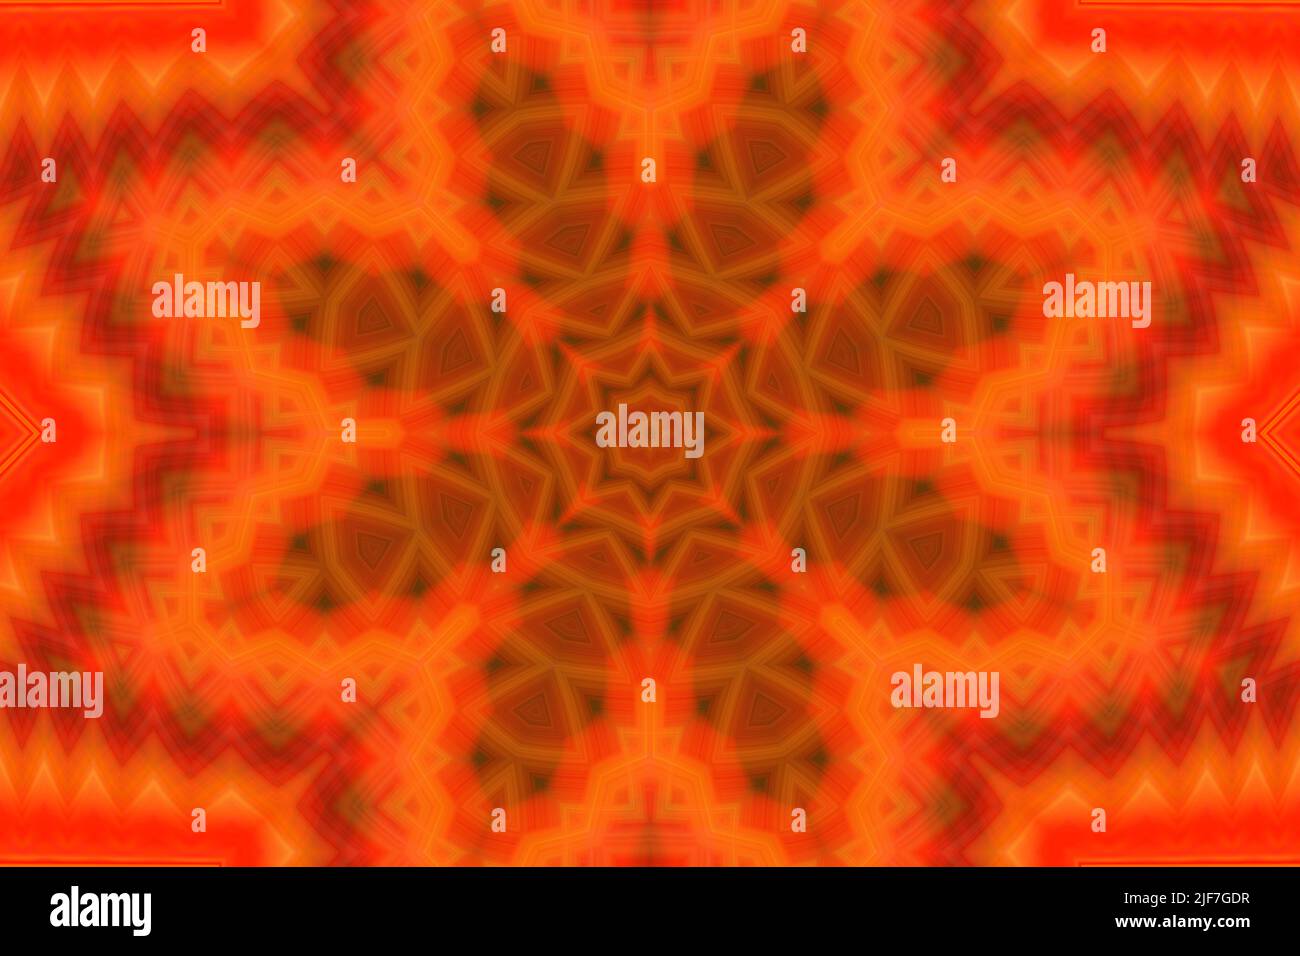 Arte Digital, ilustración en 3D, patrón caleidoscopio geométrico naranja abstracto Foto de stock